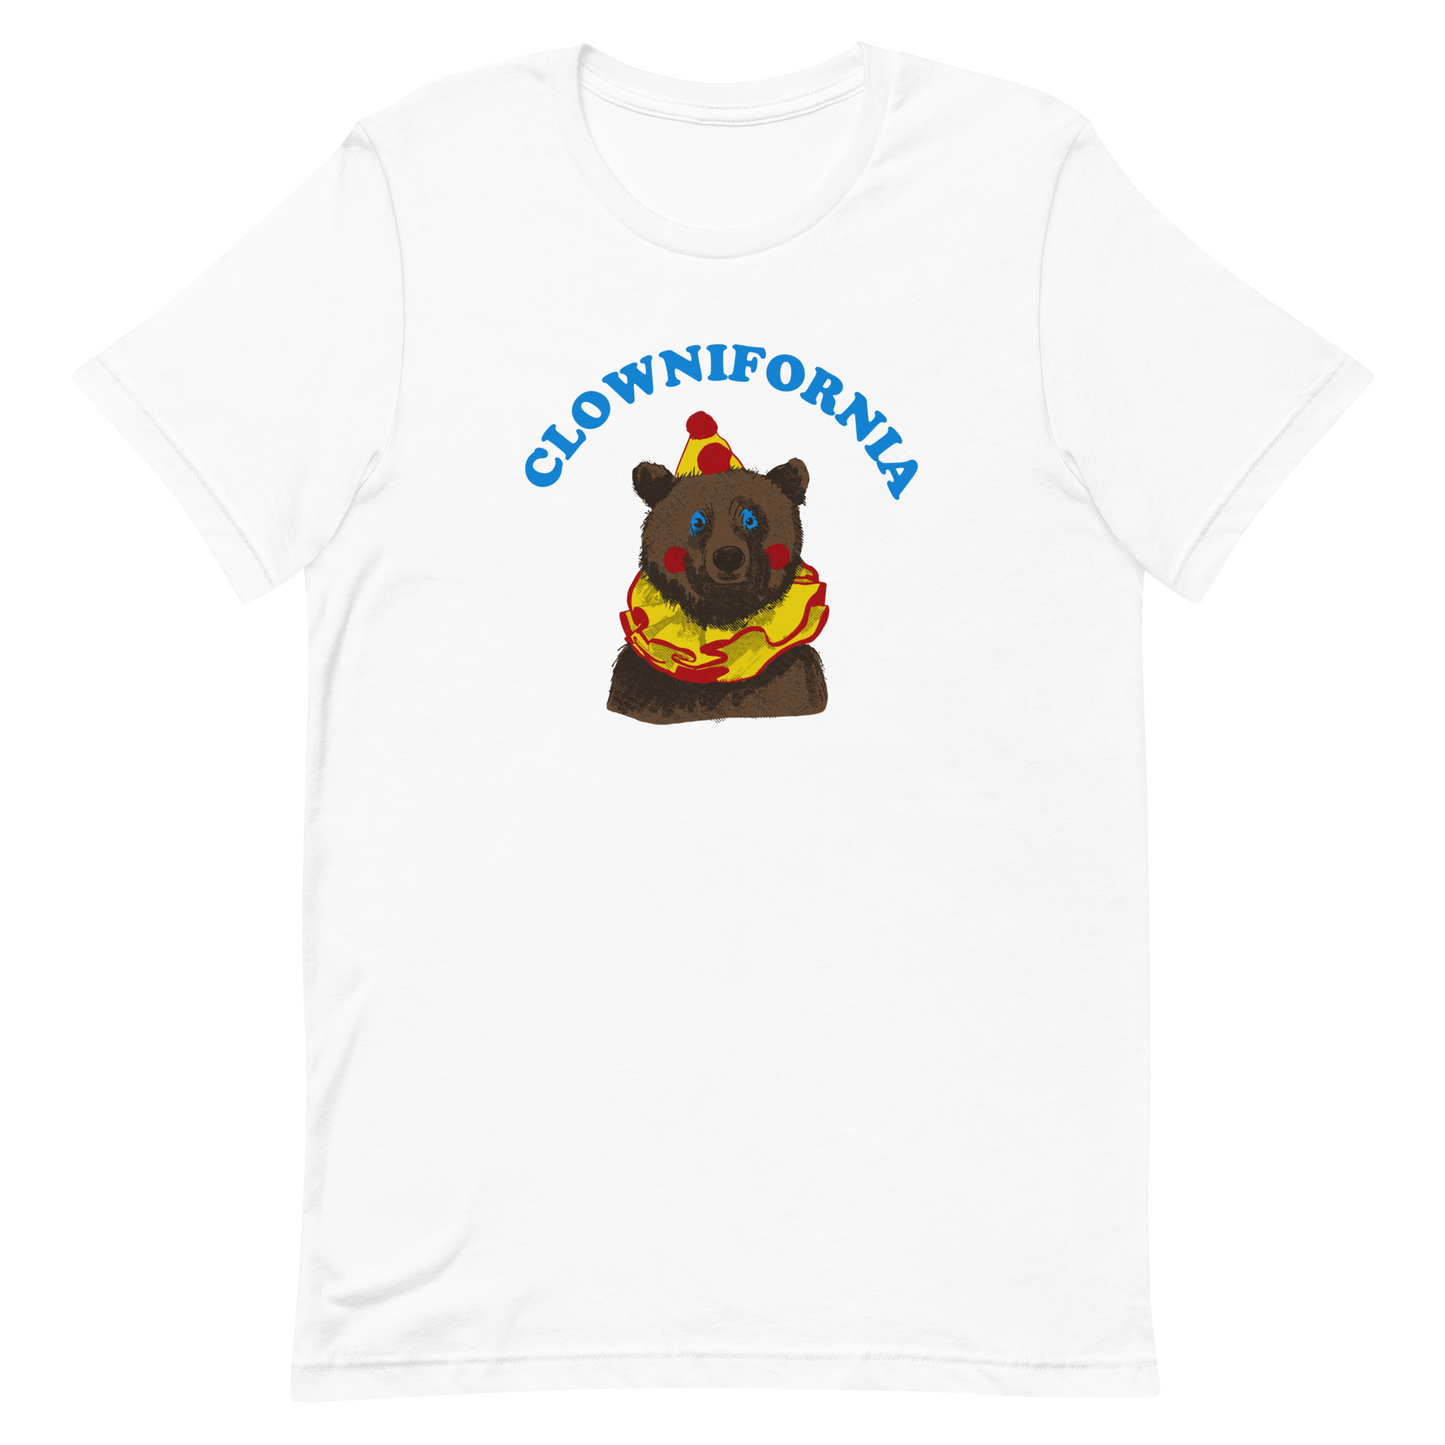 Clownifornia T-shirt